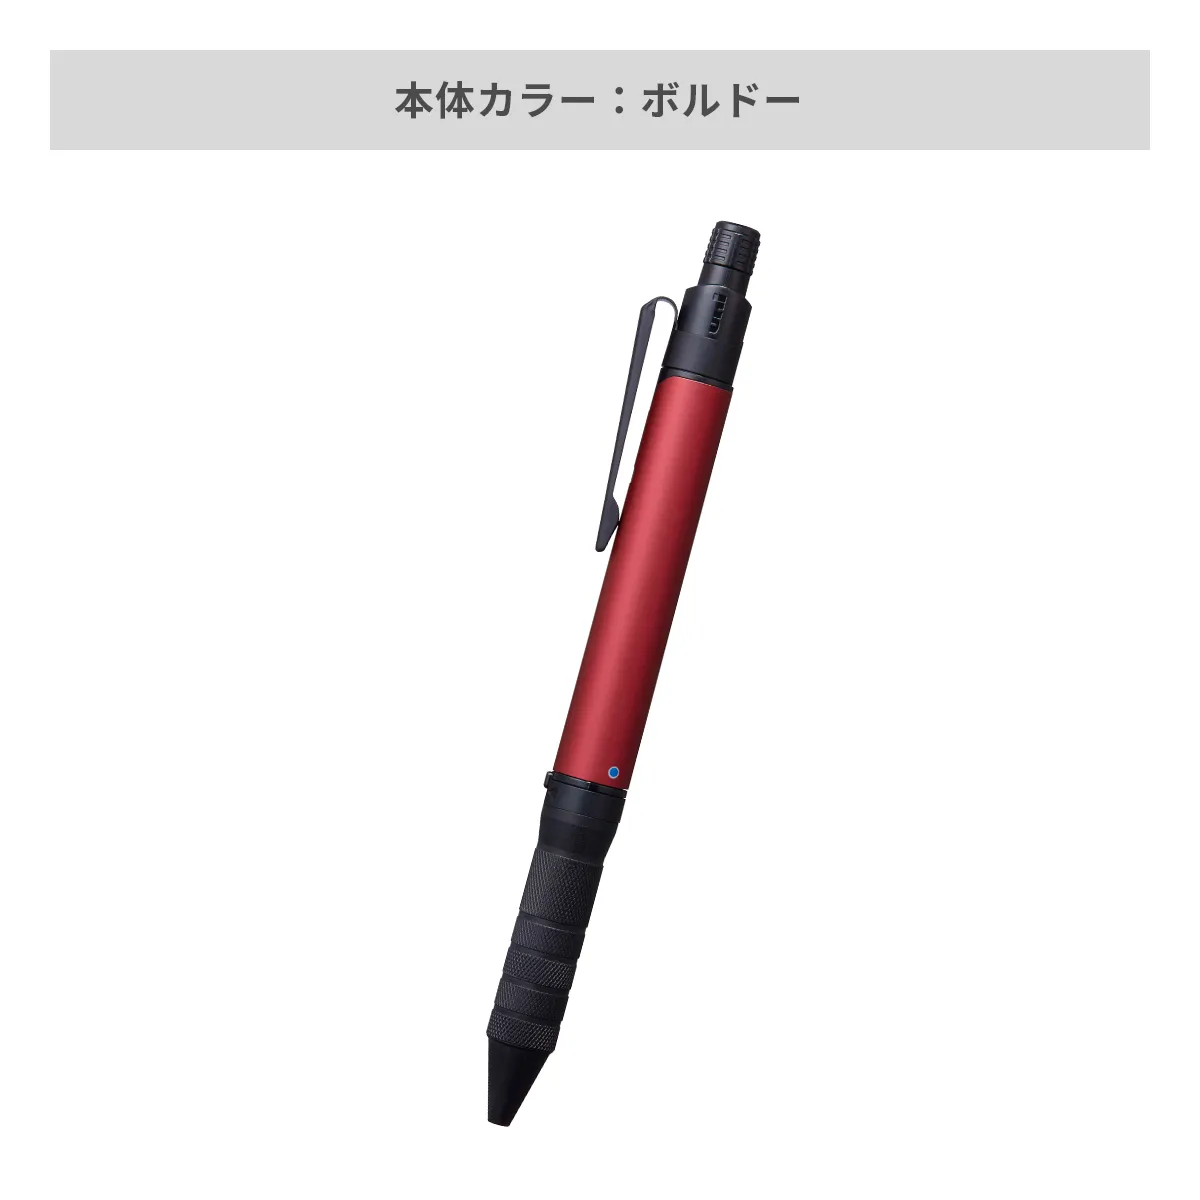 三菱鉛筆 ユニボール アールイー3ビズ 0.5mm【名入れボールペン / パッド印刷】 画像6